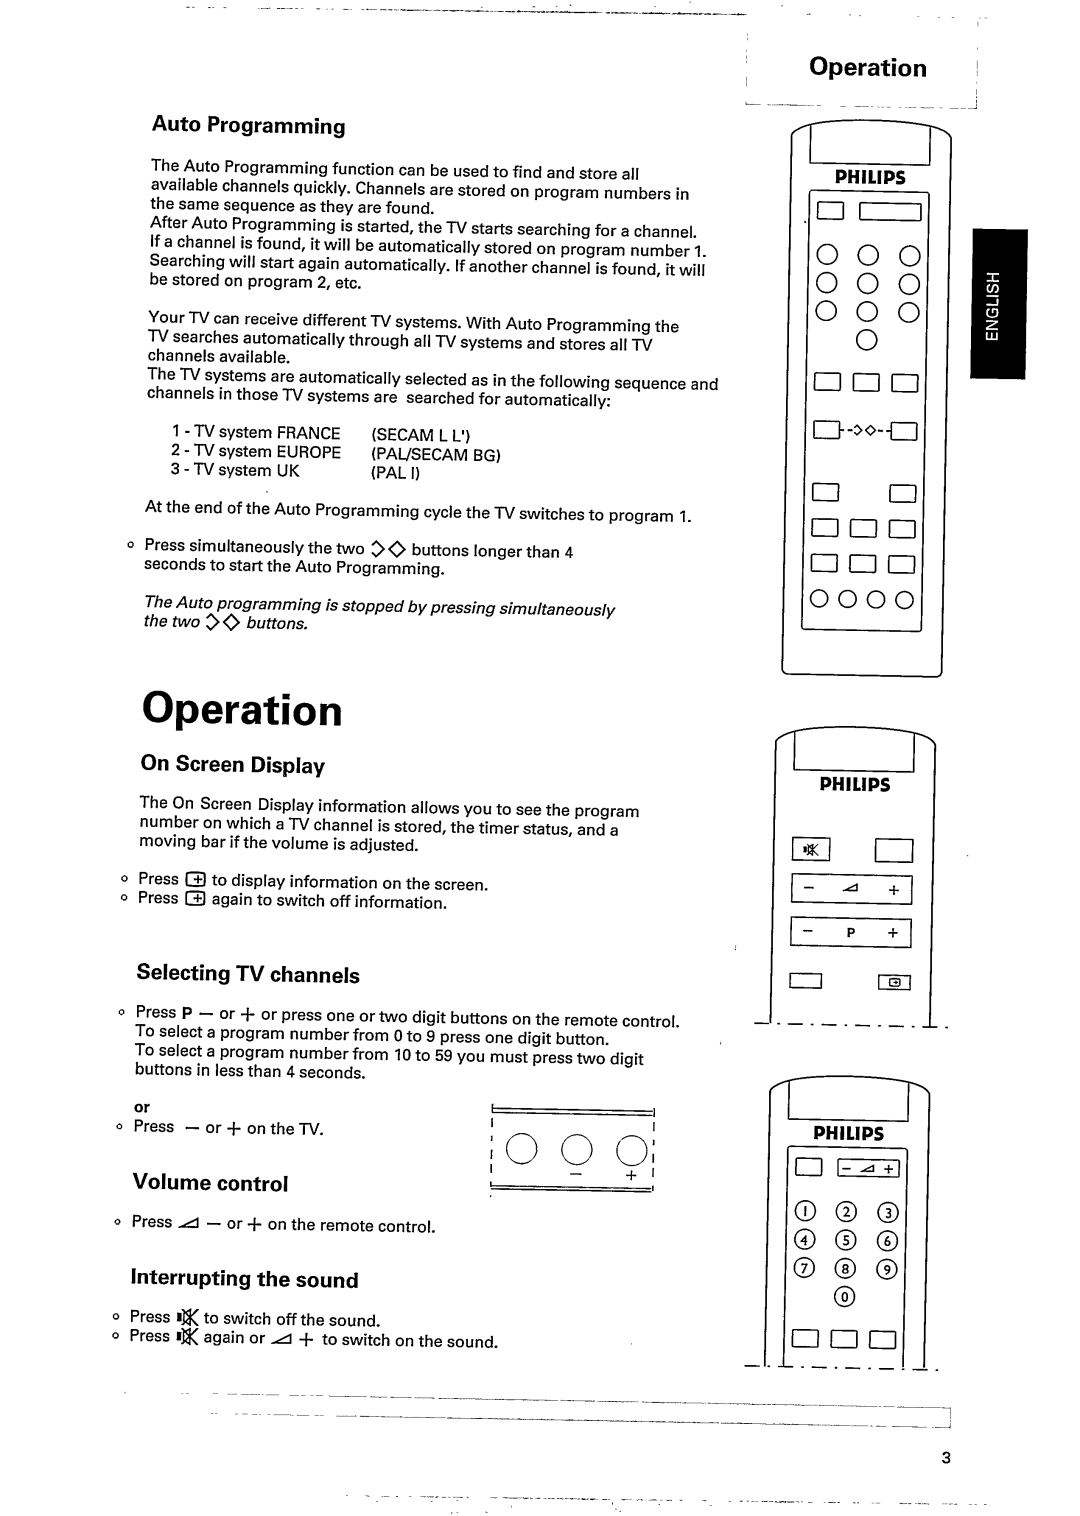 Philips 21AA3557, 21PT164B, 15AA3537, 21PT161B, 17AA3547 manual 